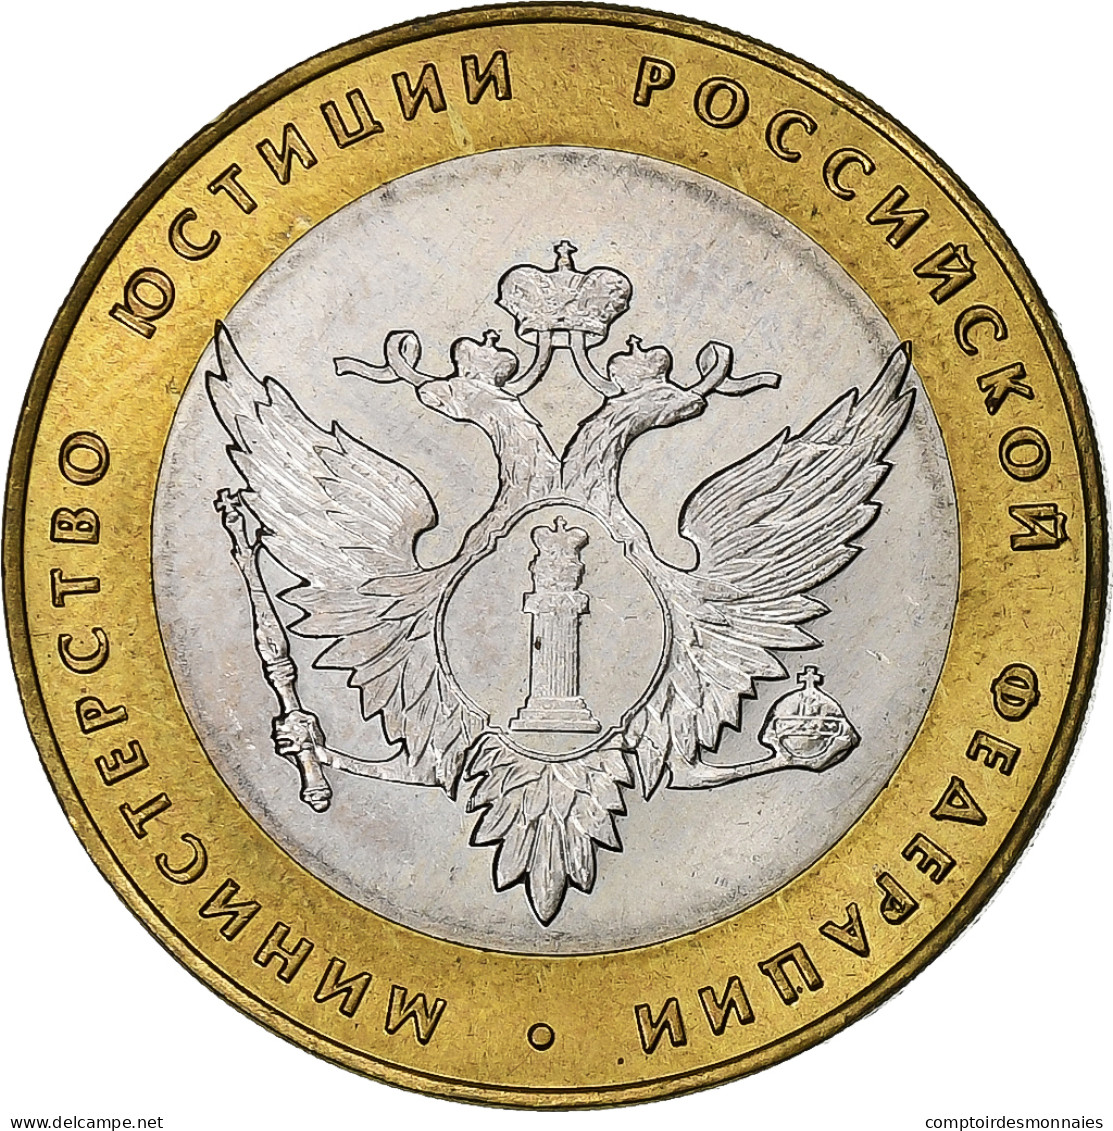 Russie, 10 Roubles, 2002, St. Petersburg, Bimétallique, SUP, KM:753 - Rusland